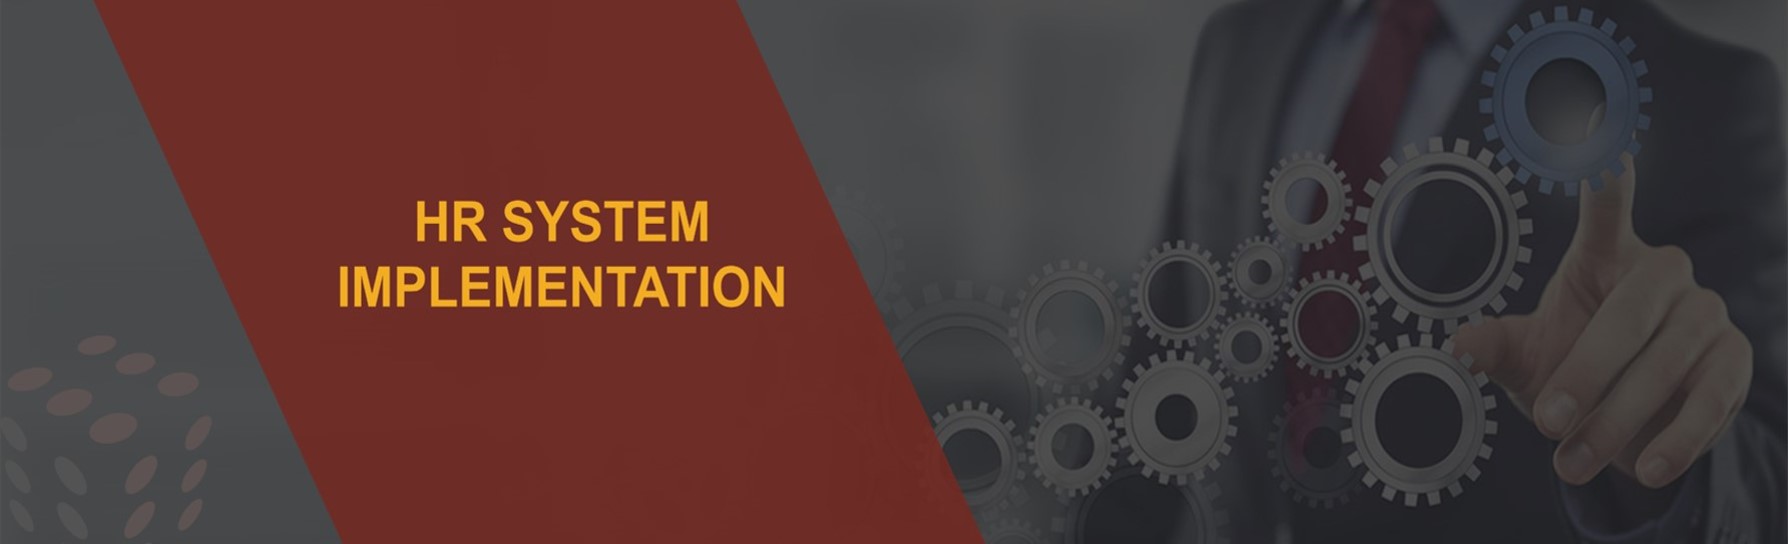 hr-system-implementation